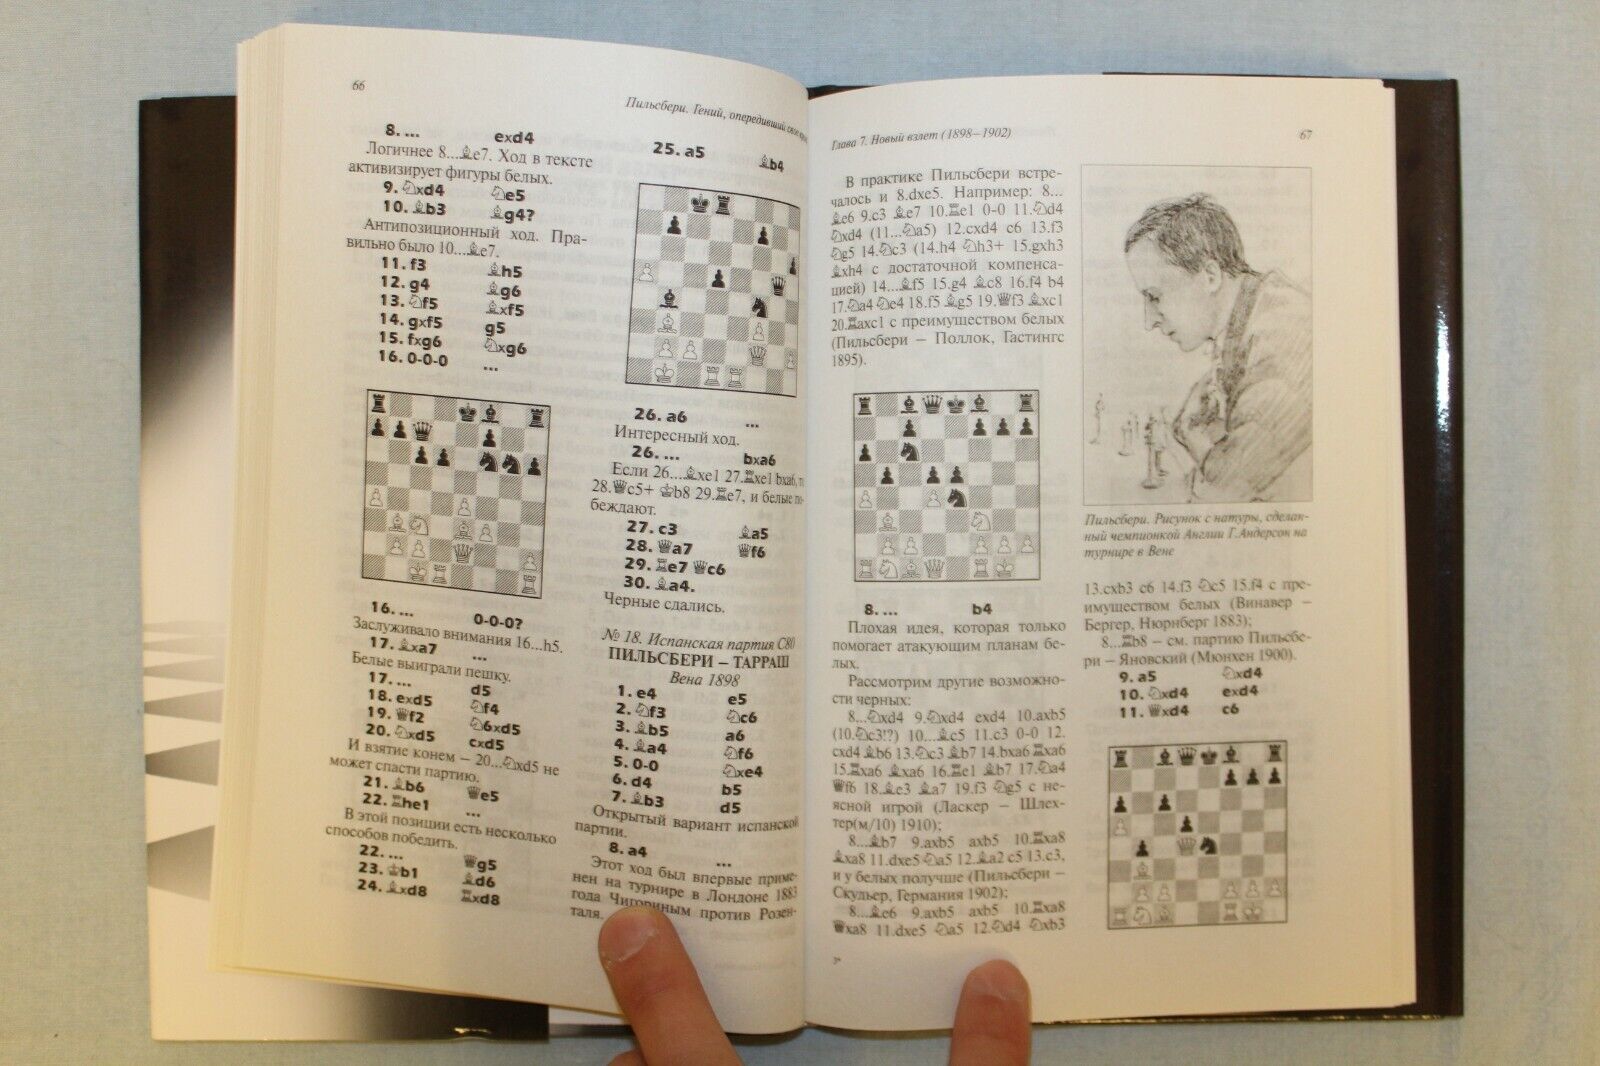 10717.3 Russian Books: History of Chess, Pillsbury's Lessons, Rubinstein's School